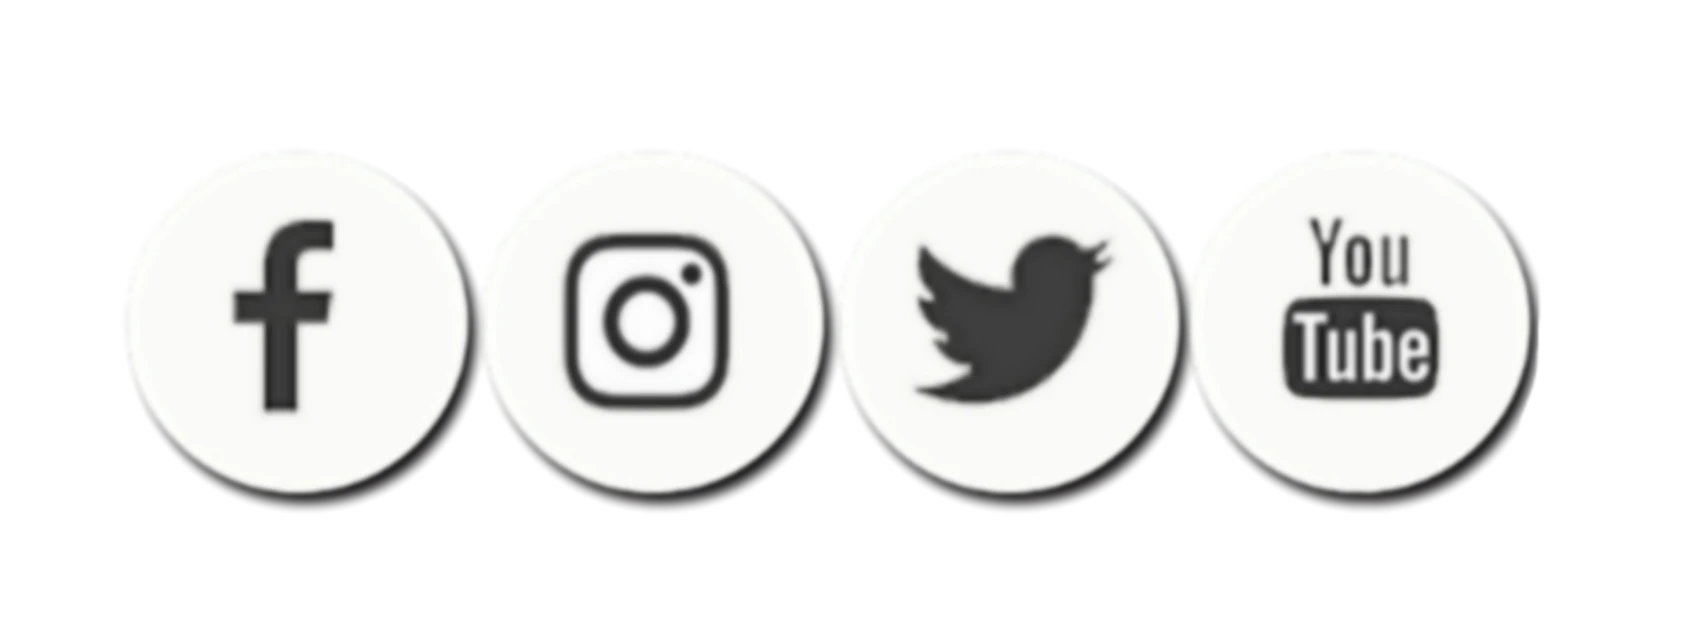 Facebook Instagram YouTube Logotipo PNG imagem de Alta Qualidade